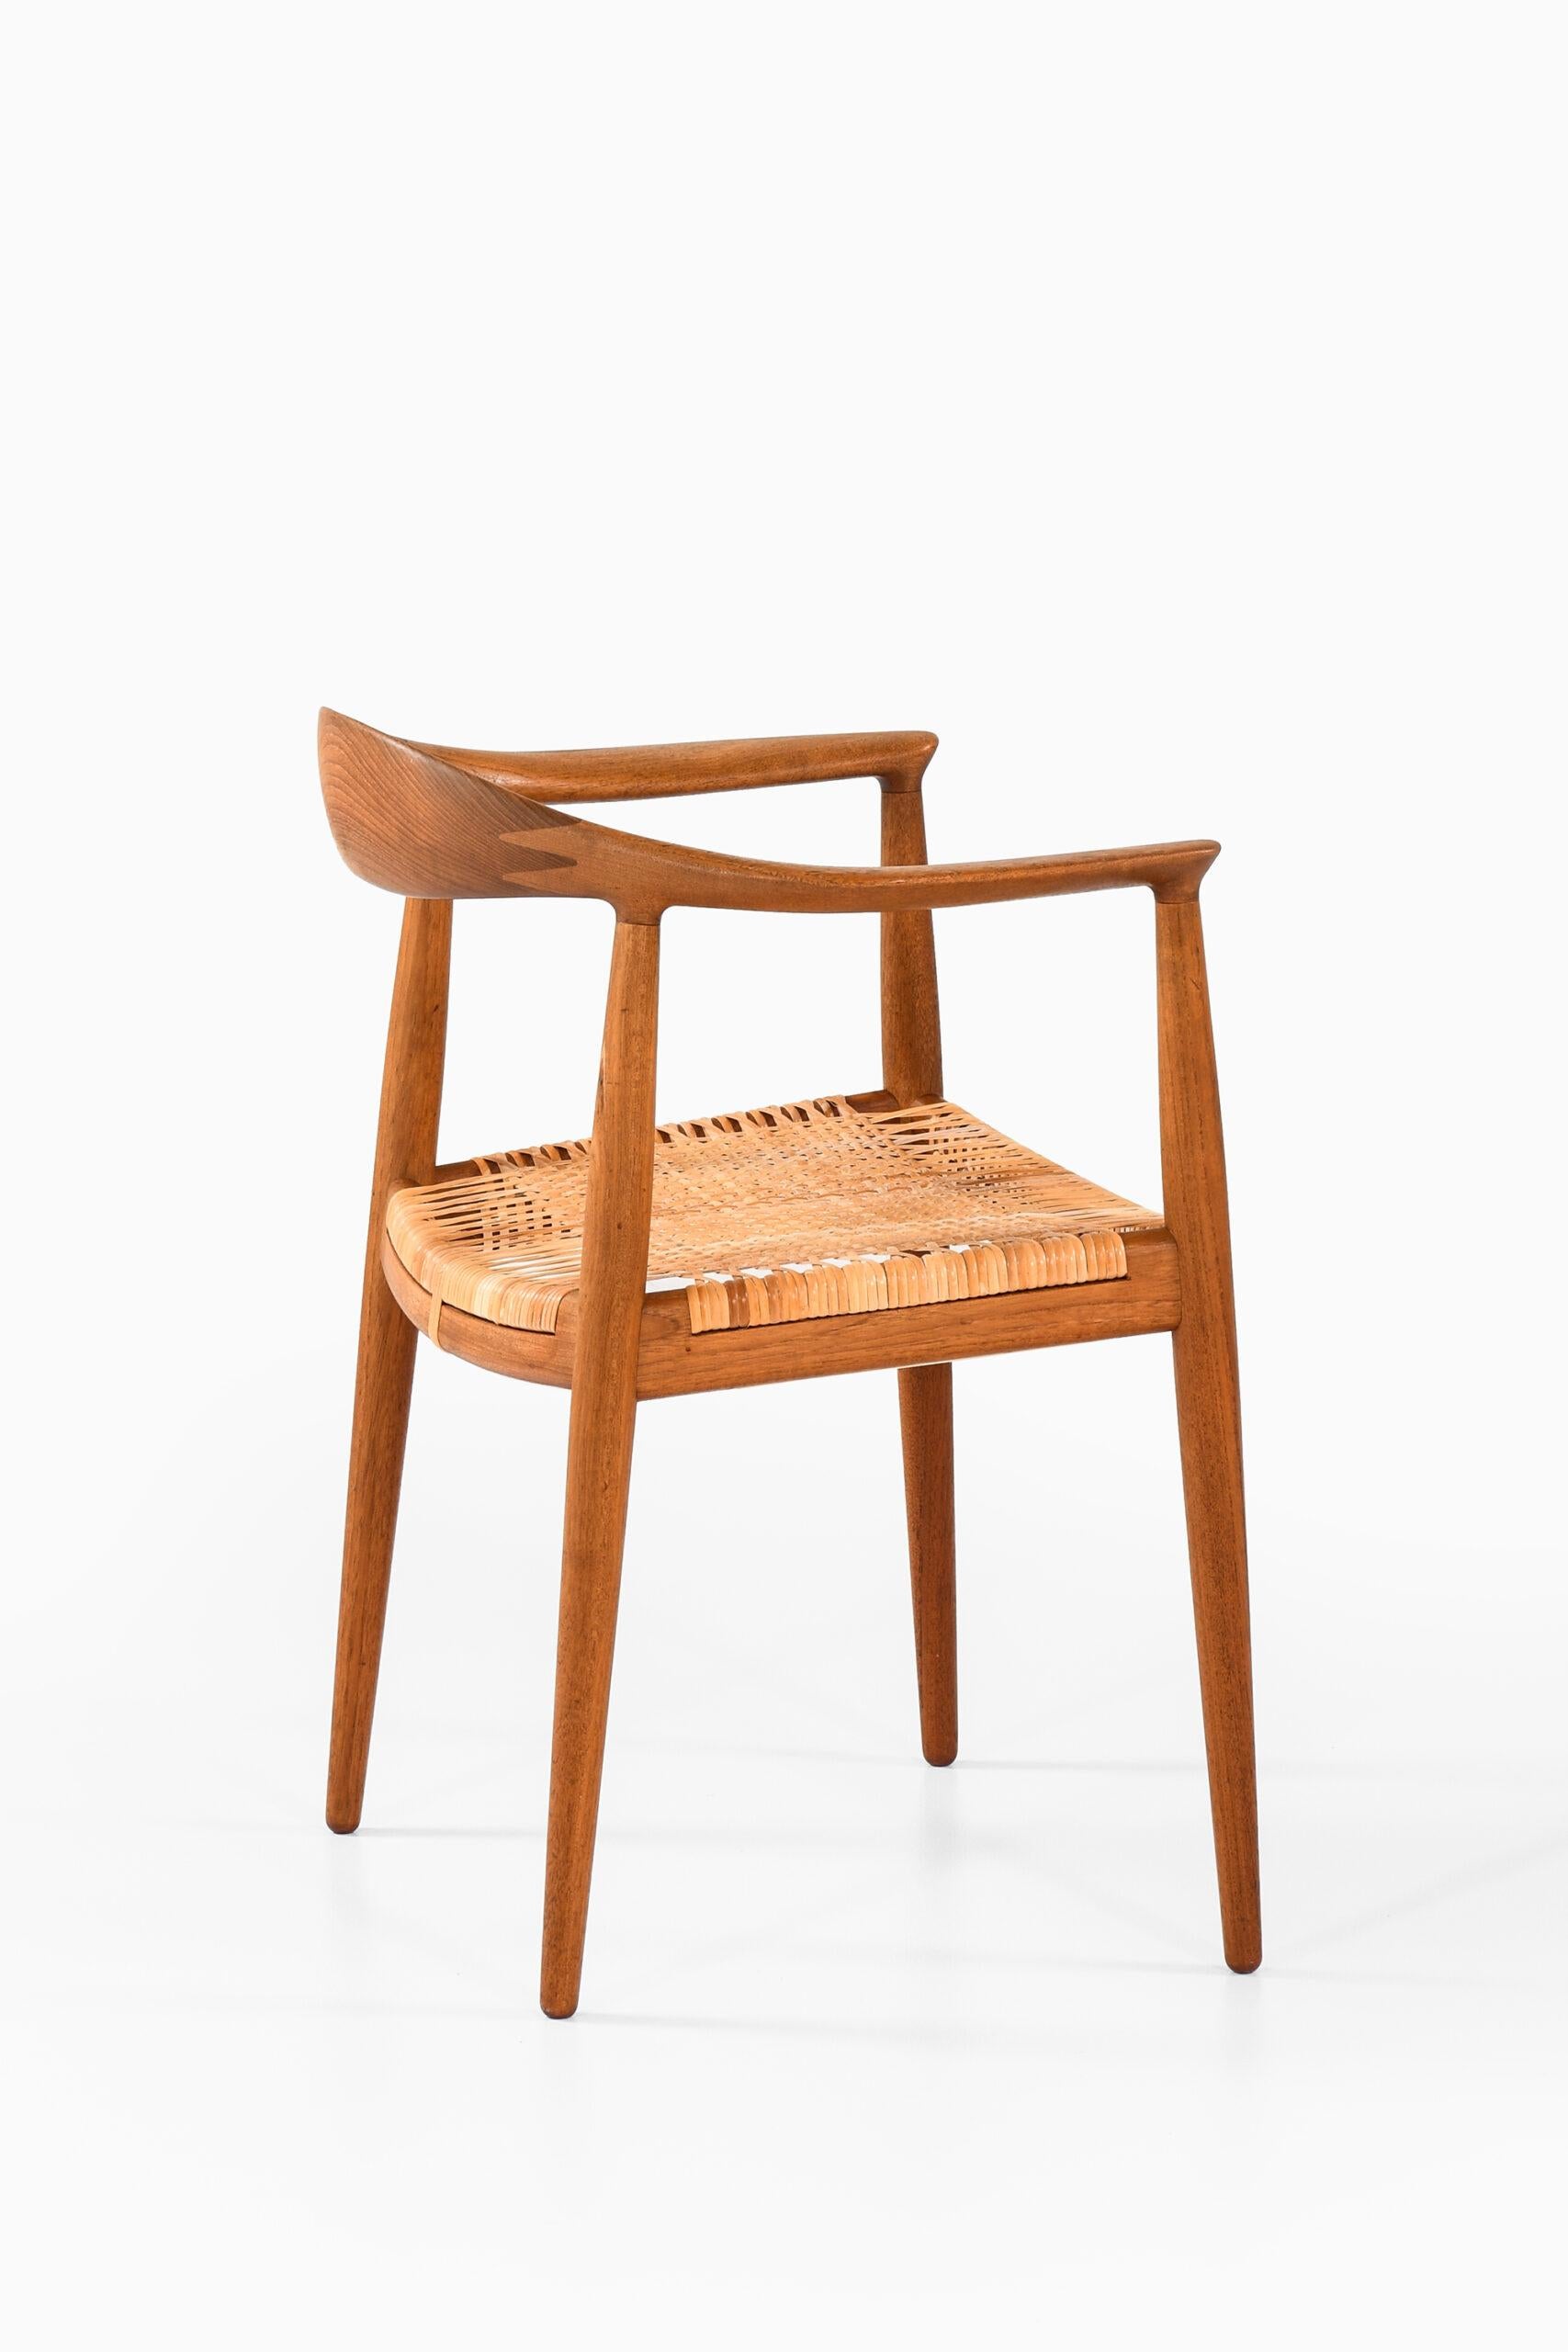 Hans Wegner Armchair Model Jh-501 / the Chair by Johannes Hansen in Denmark For Sale 6